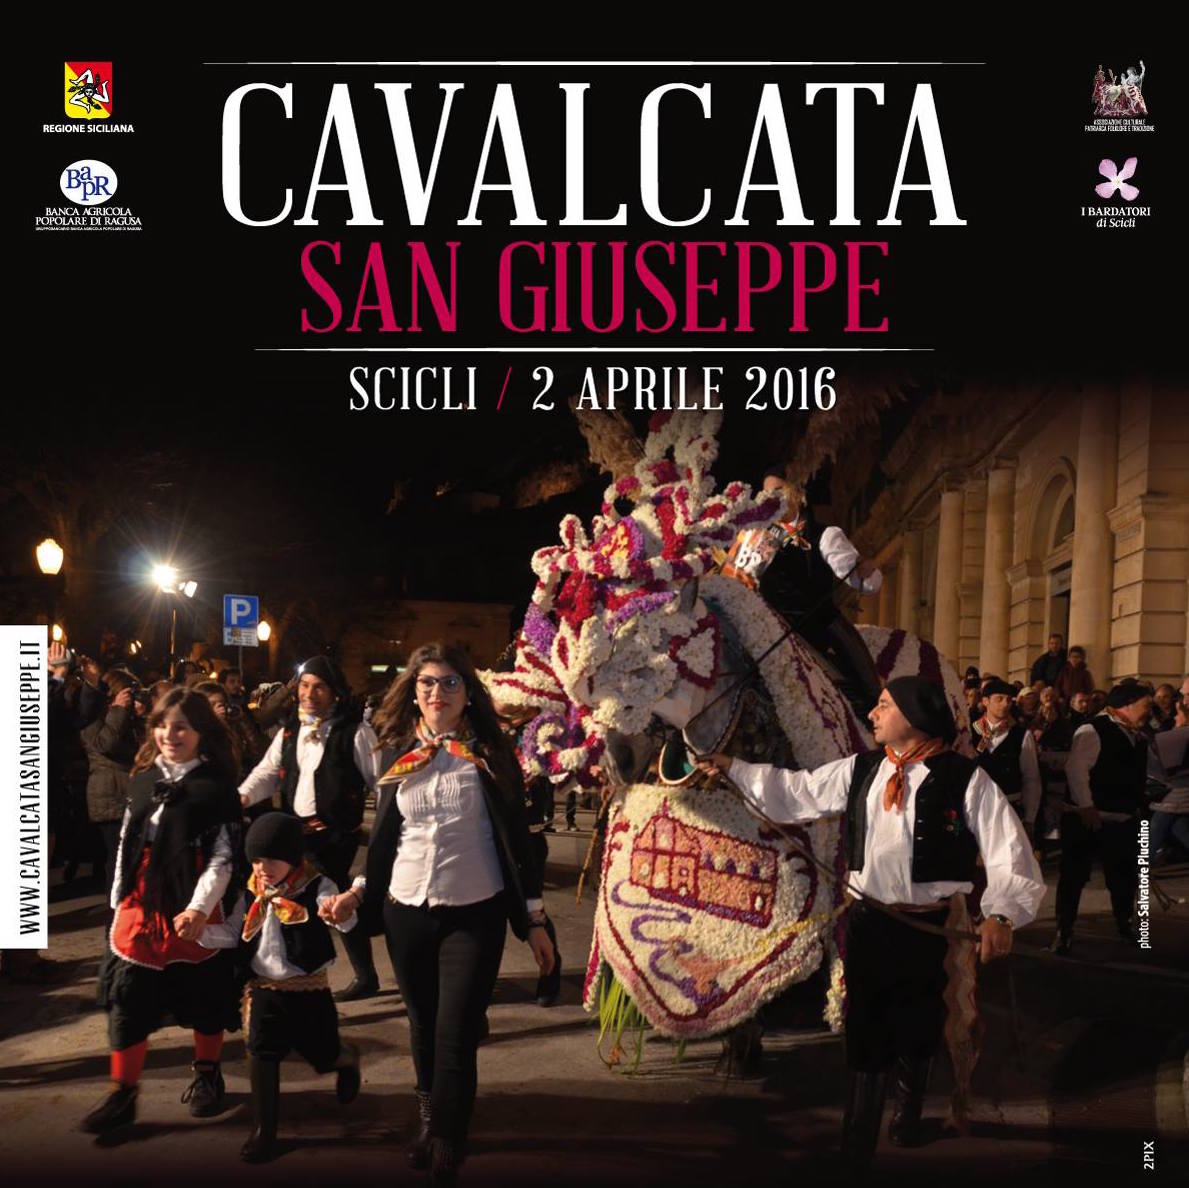  Anche Scicli onora San Giuseppe: sabato 2 aprile la celebre “cavalcata”